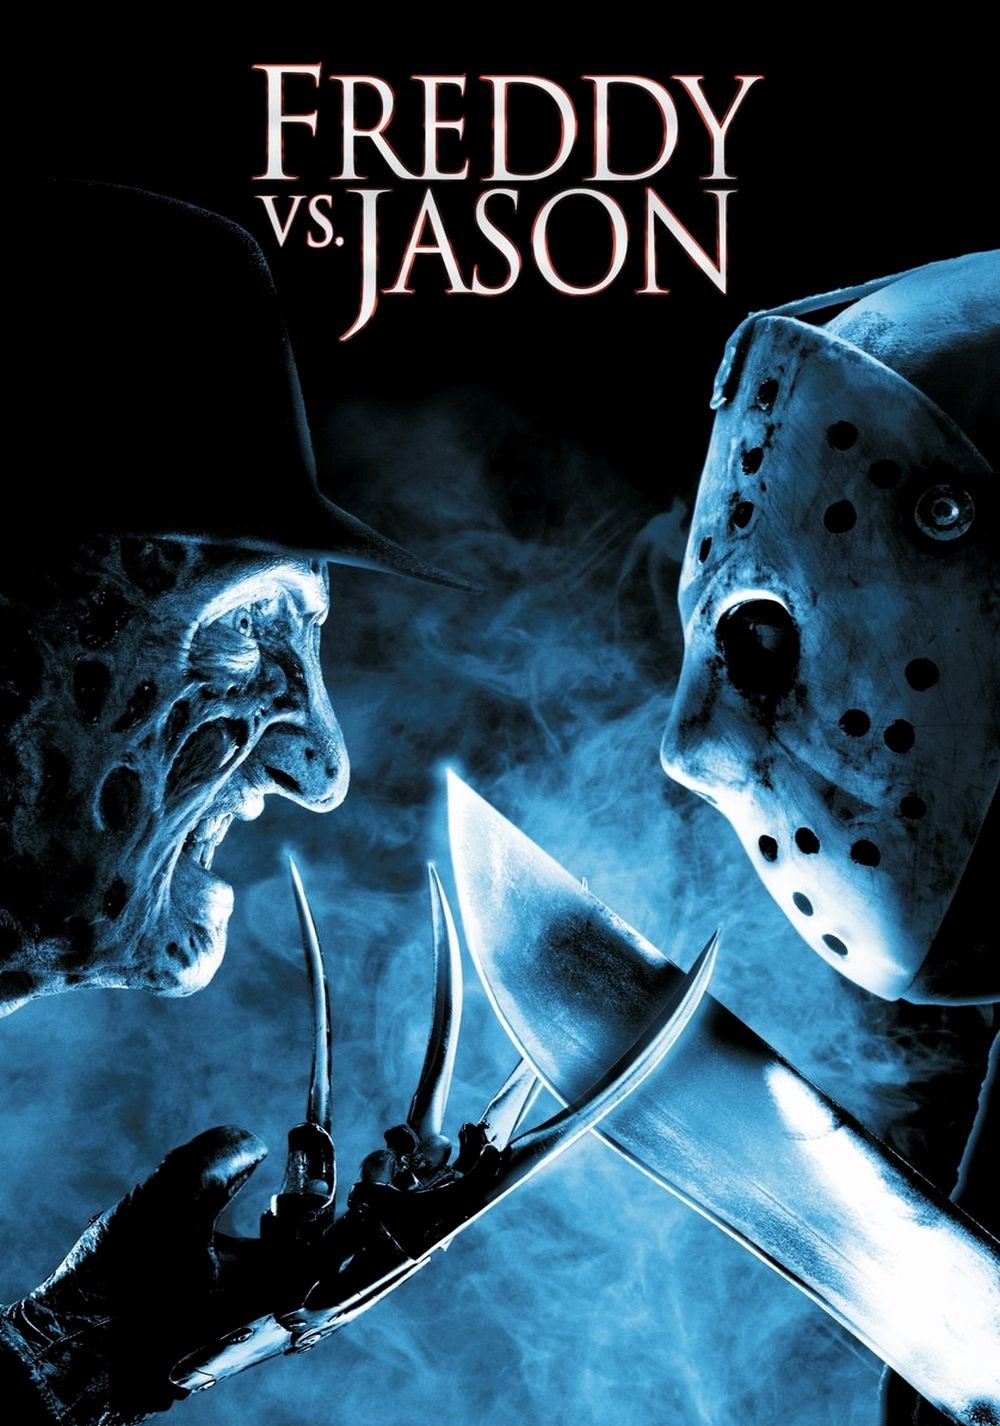 Freddy-vs-Jason-Poster-freddy-vs-jason-41027182-1000-1426.jpg